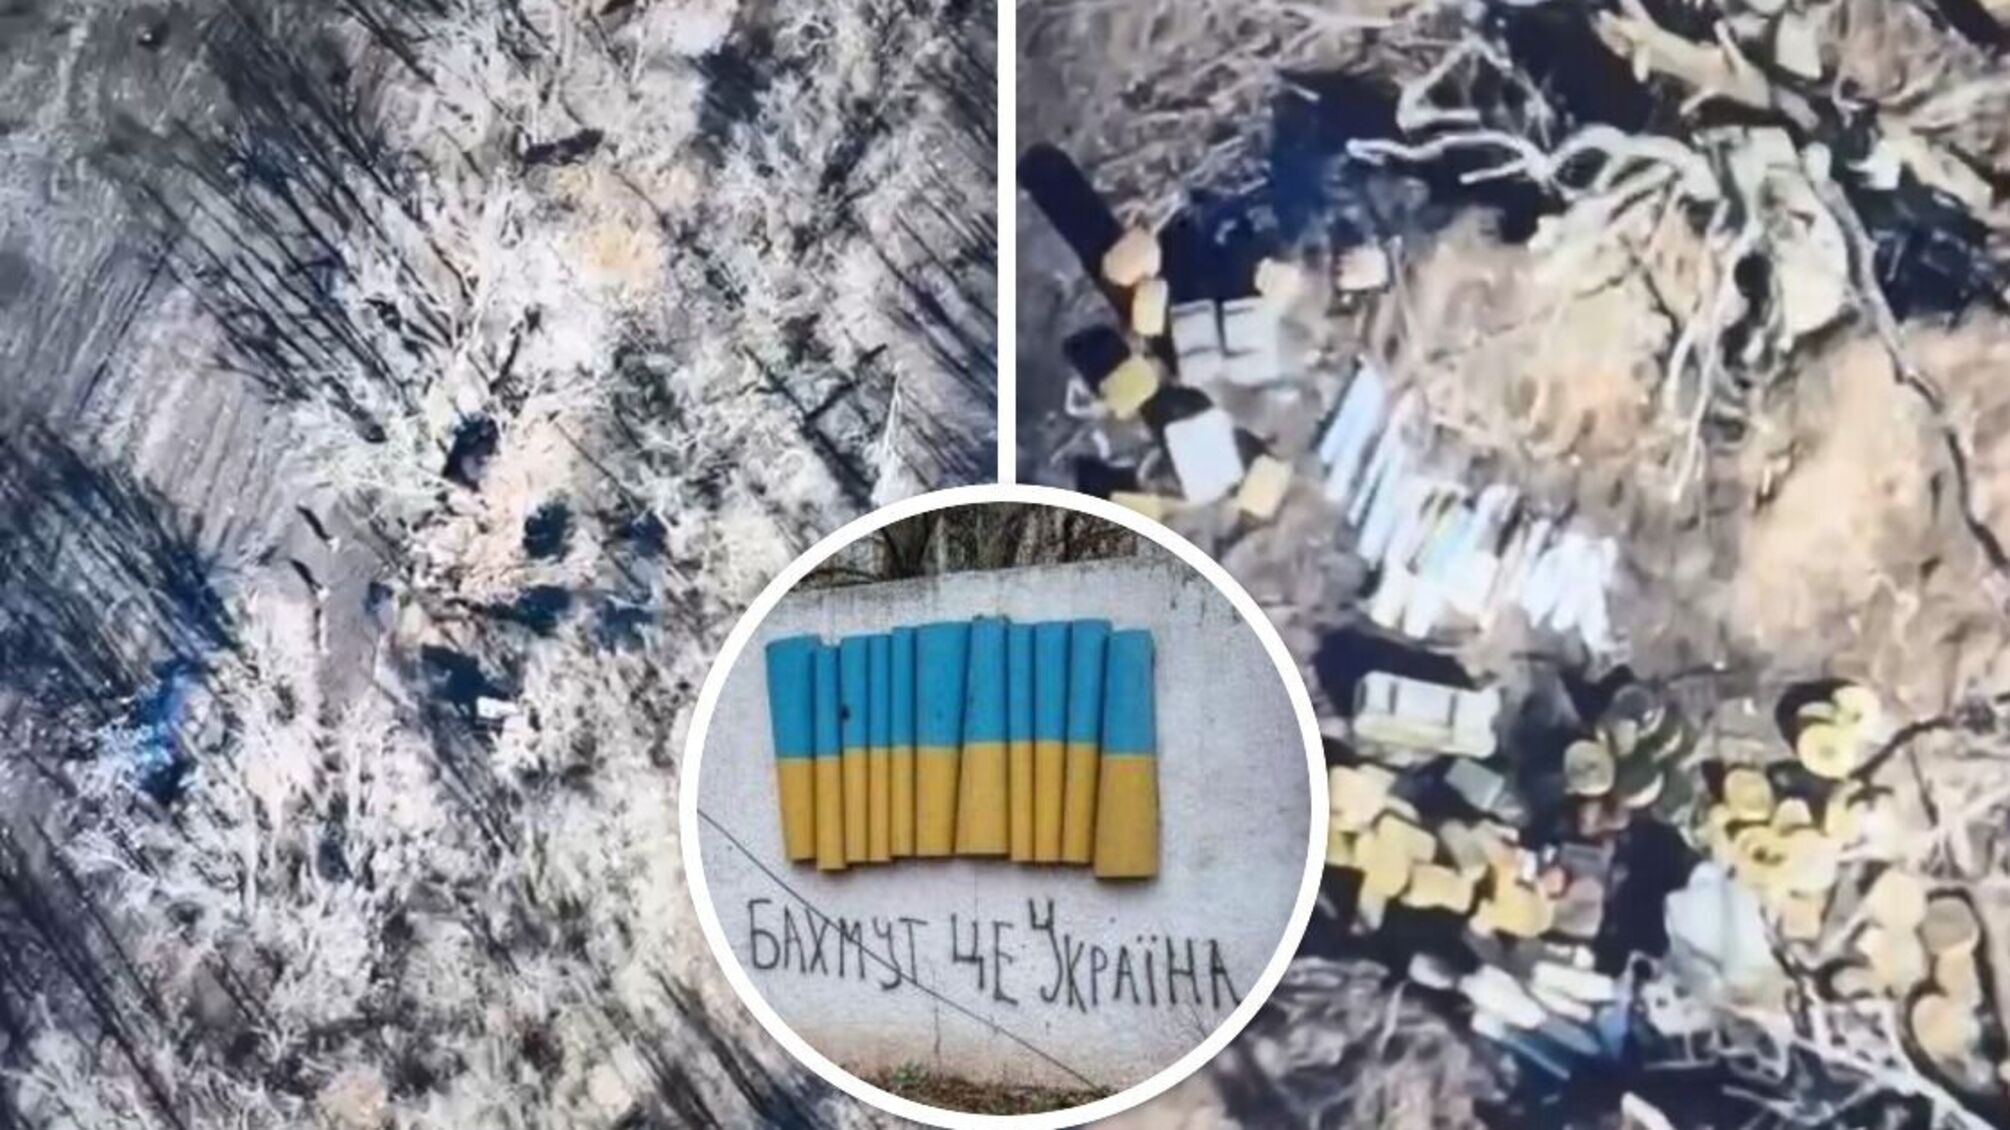 Ситуация под Бахмутом в Донецкой области